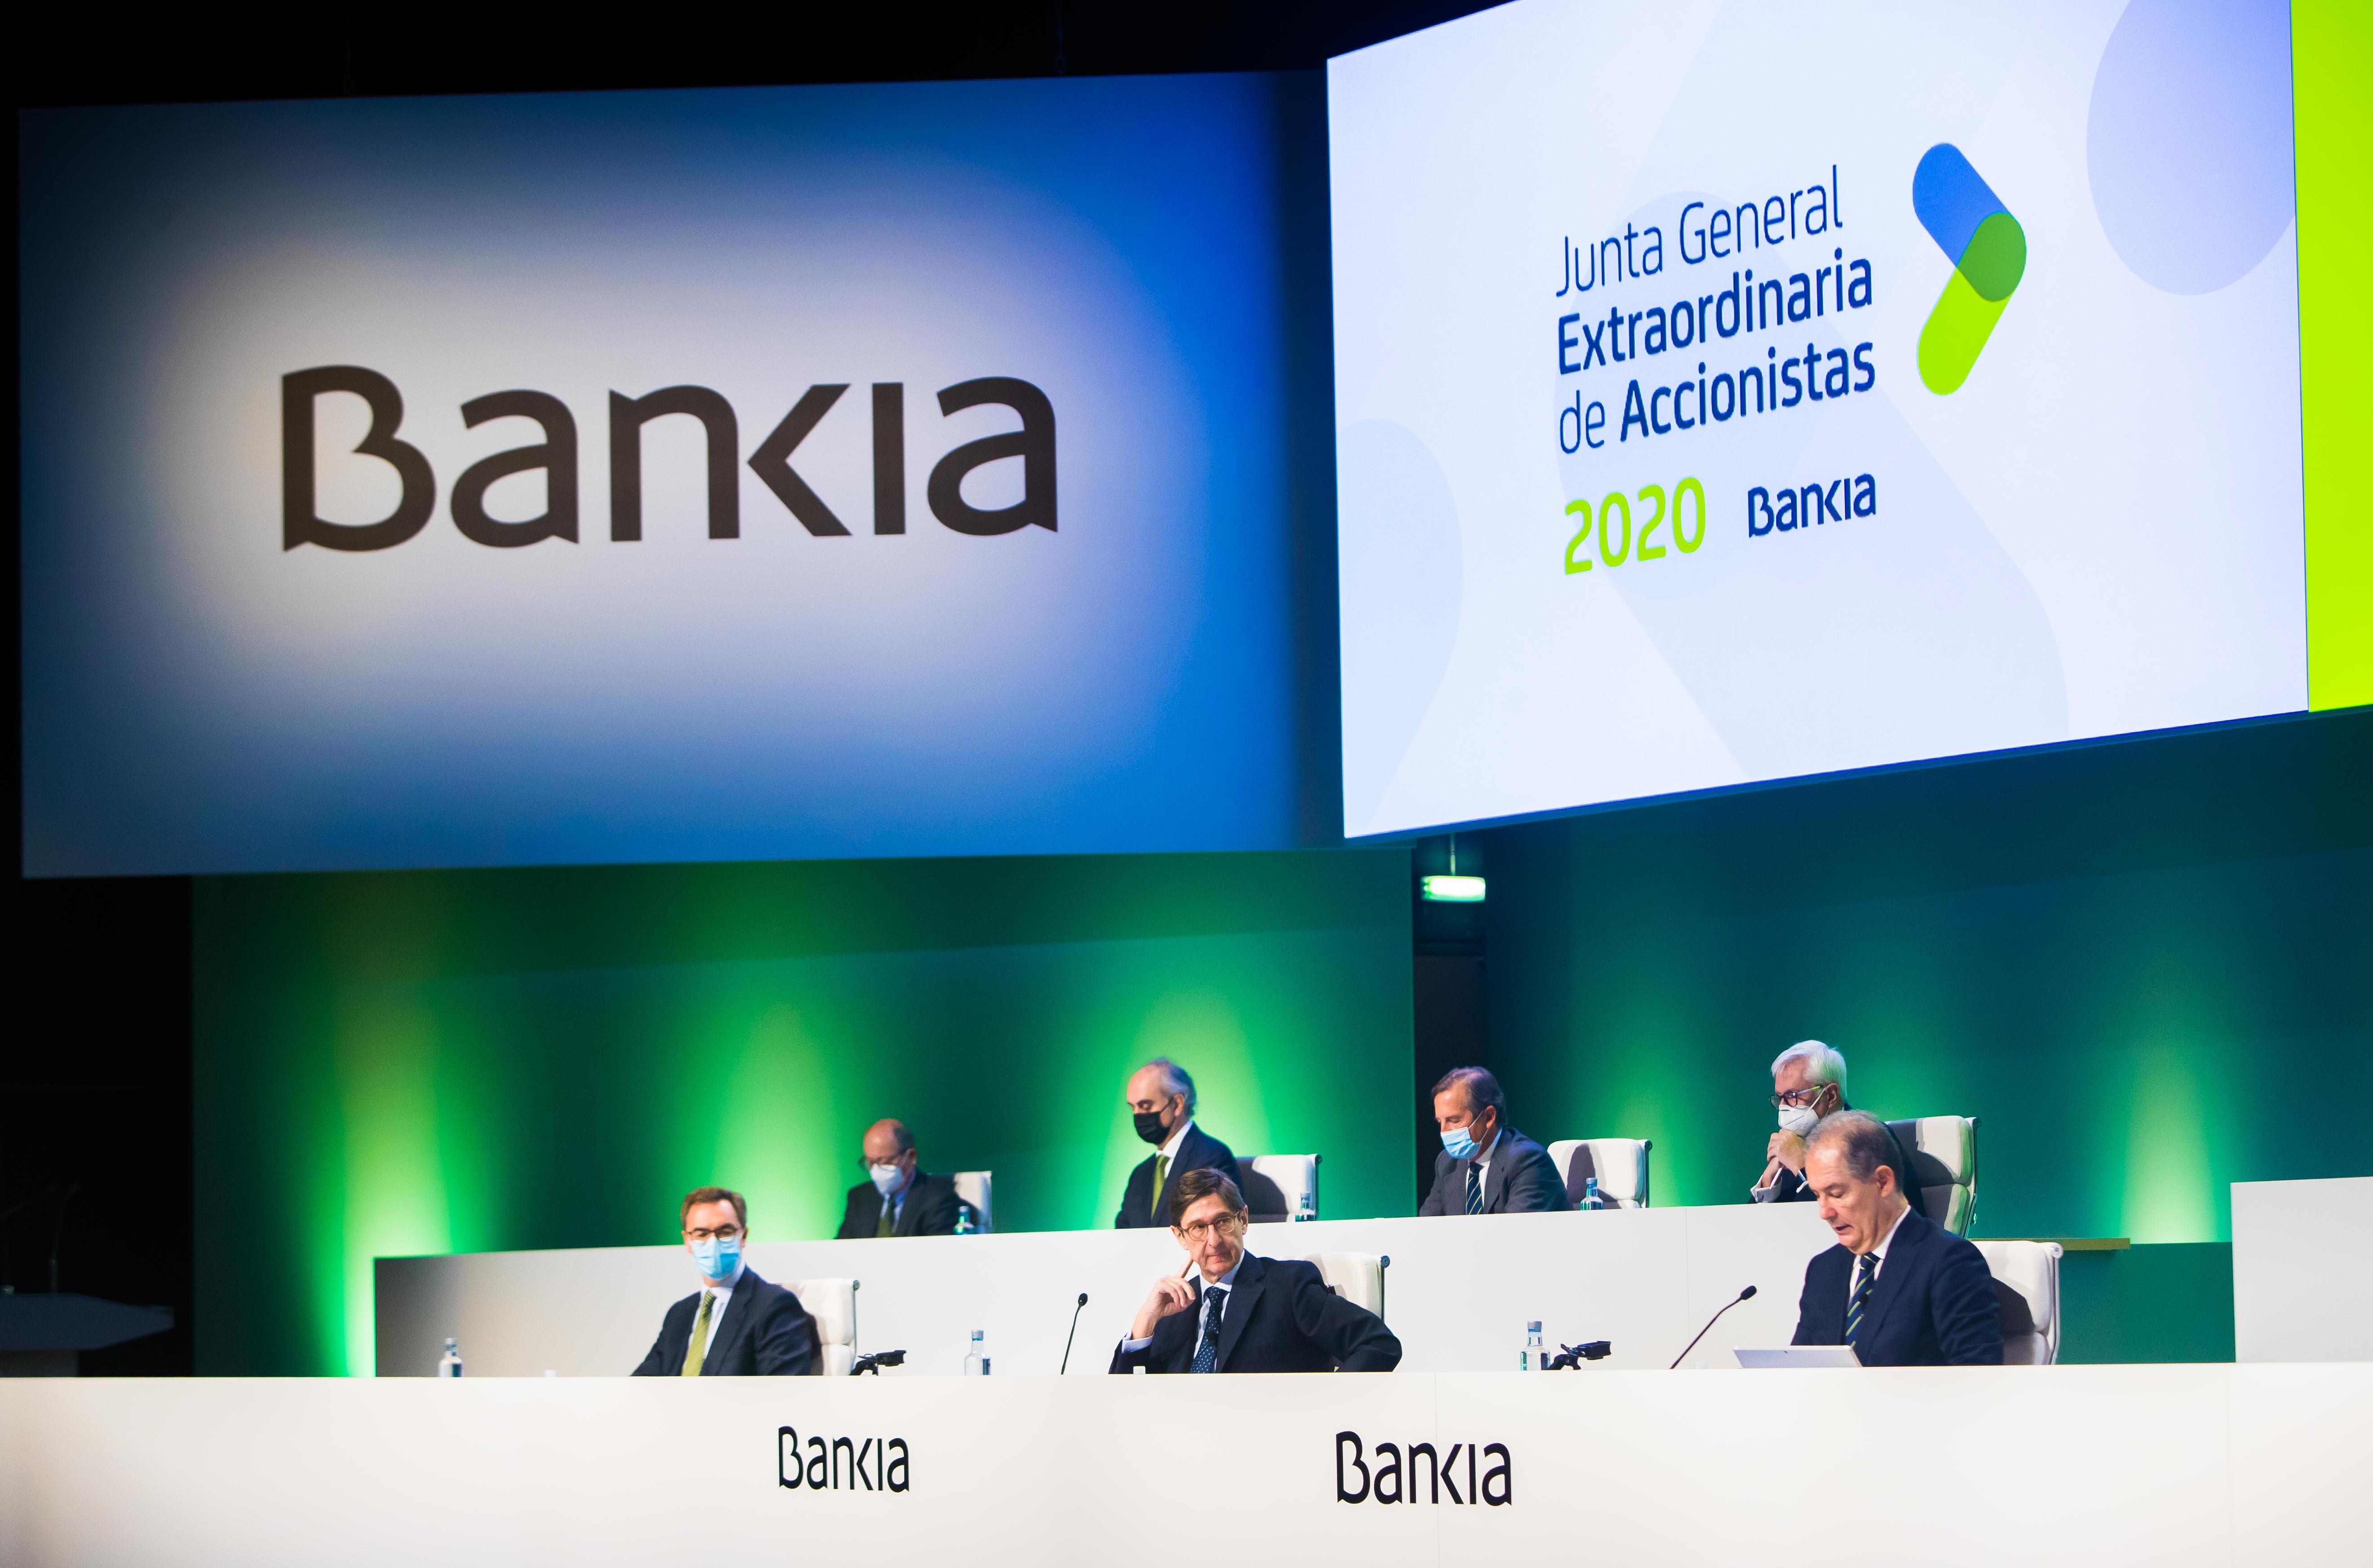 Junta General Extraordinaria de Accionistas de Bankia